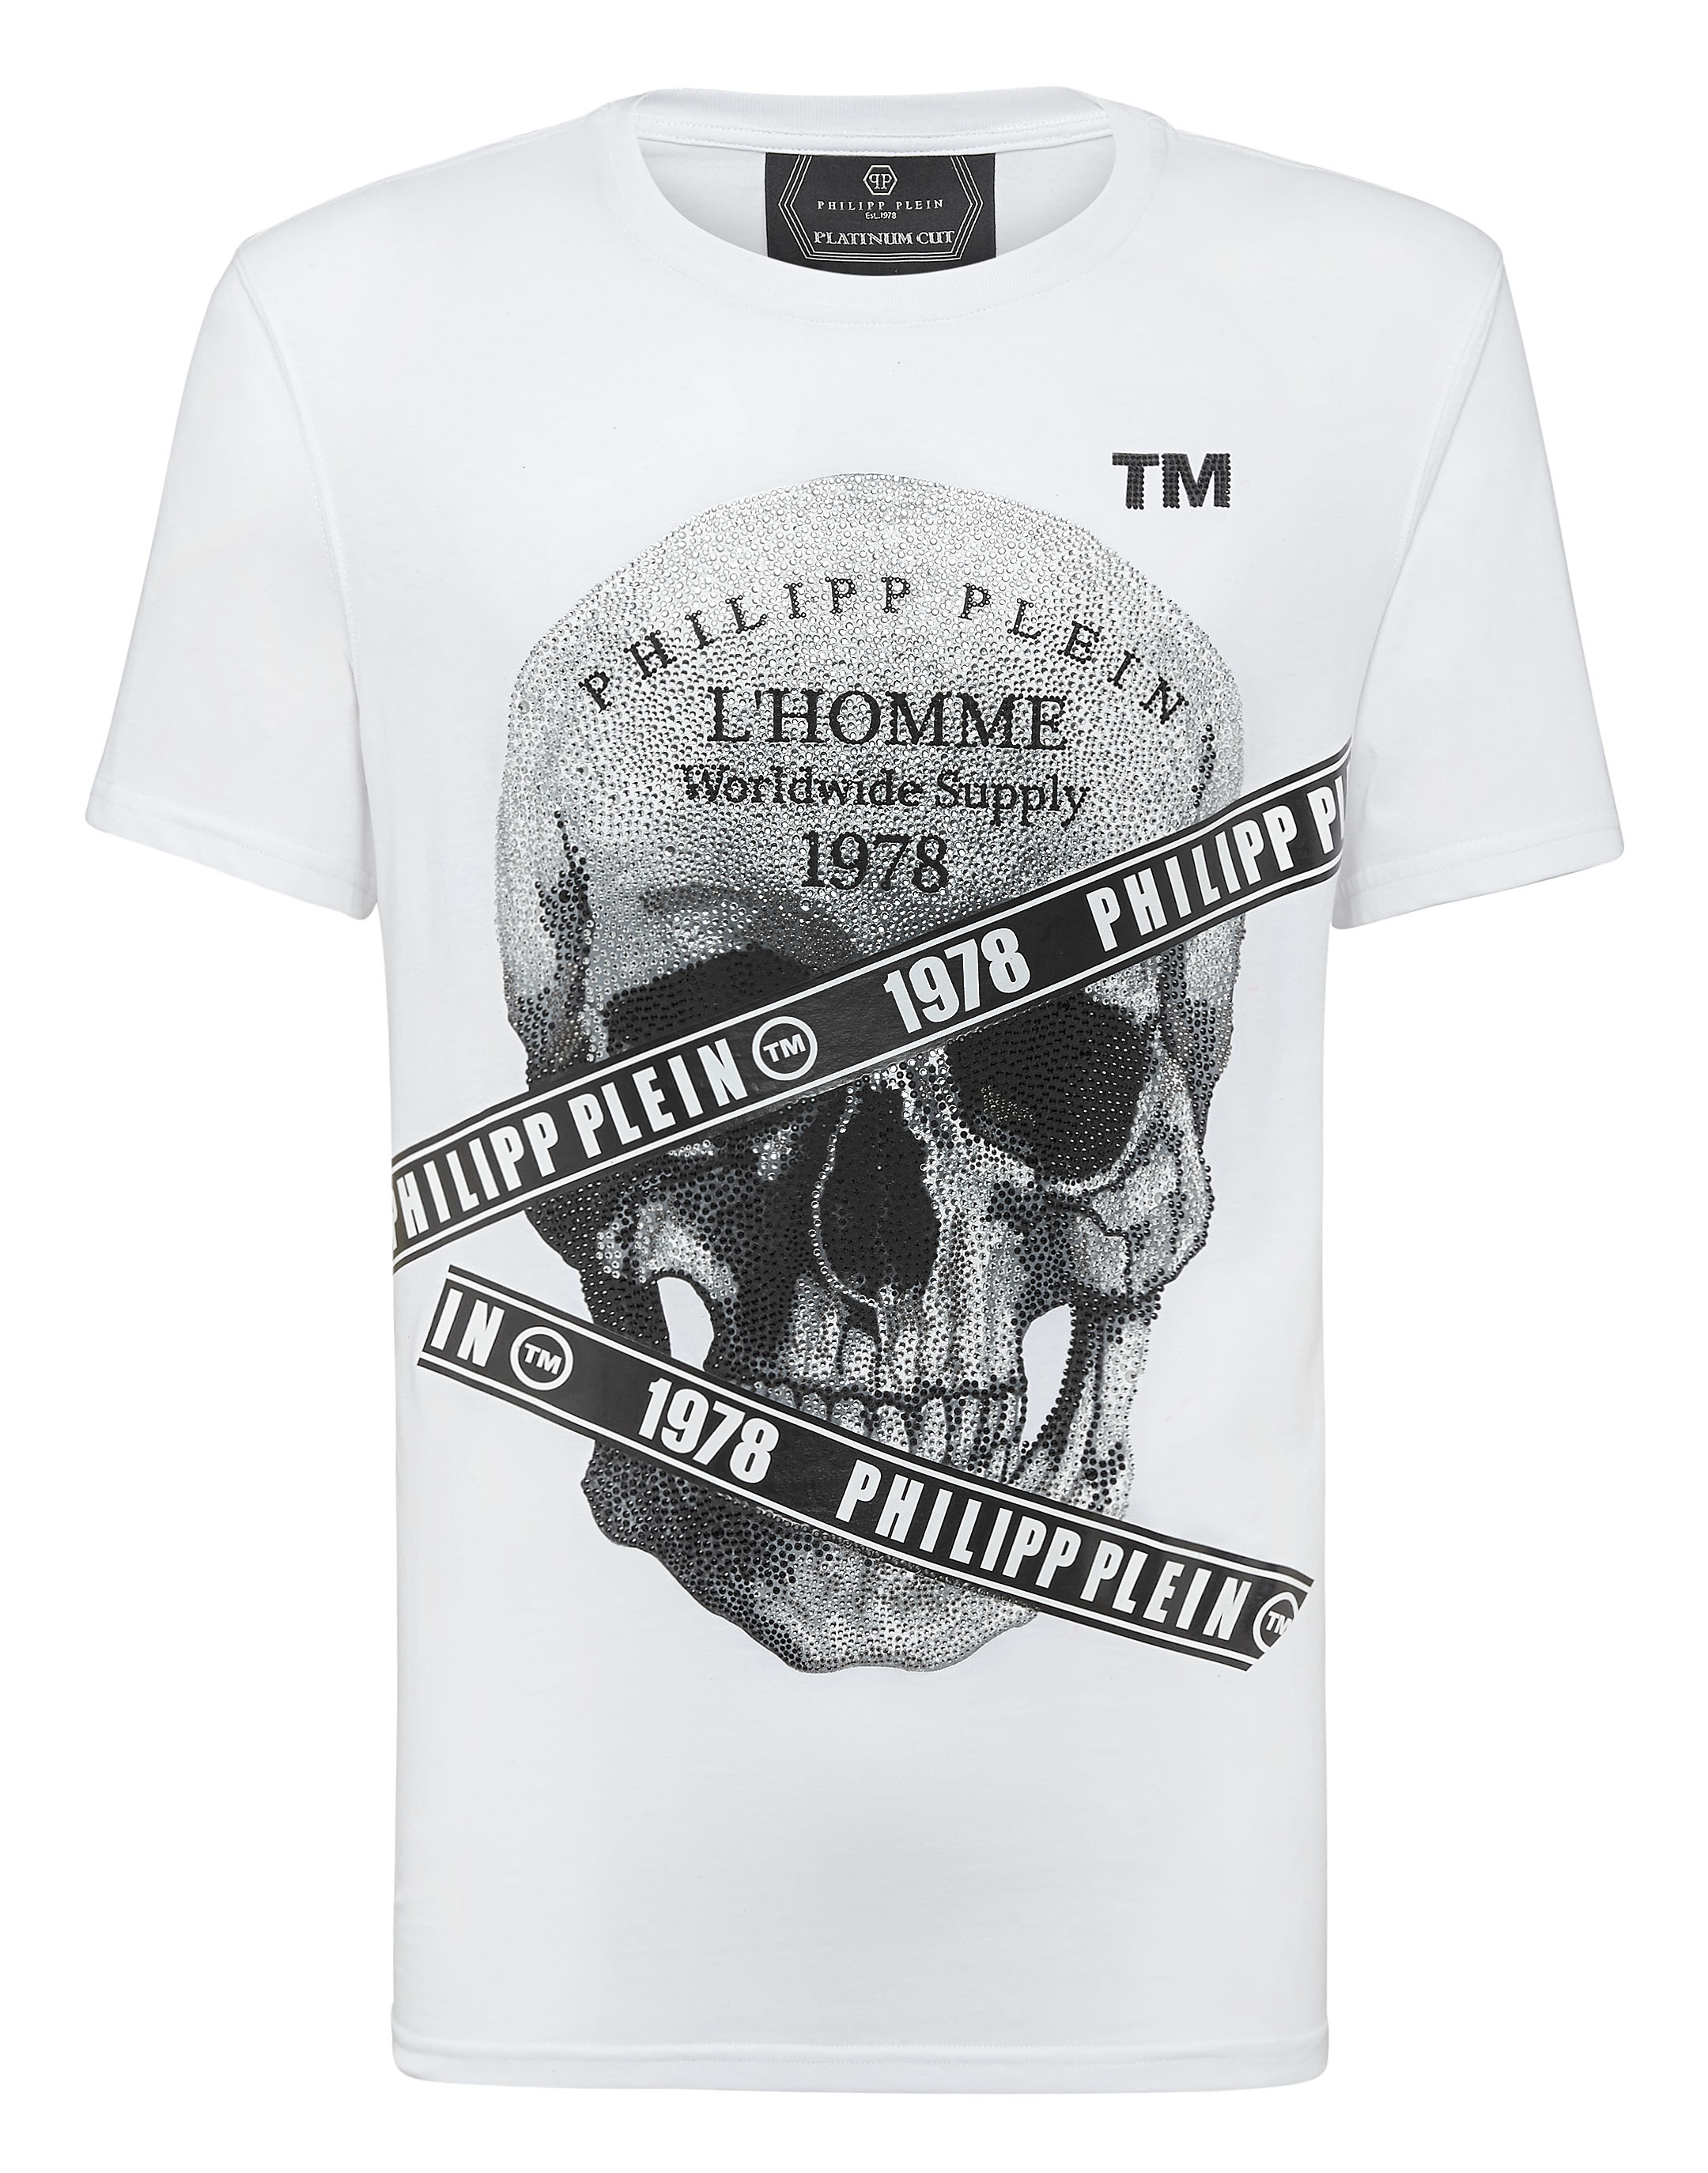 T-shirt Platinum Cut Round Neck Philipp Plein TM | Philipp Plein Outlet